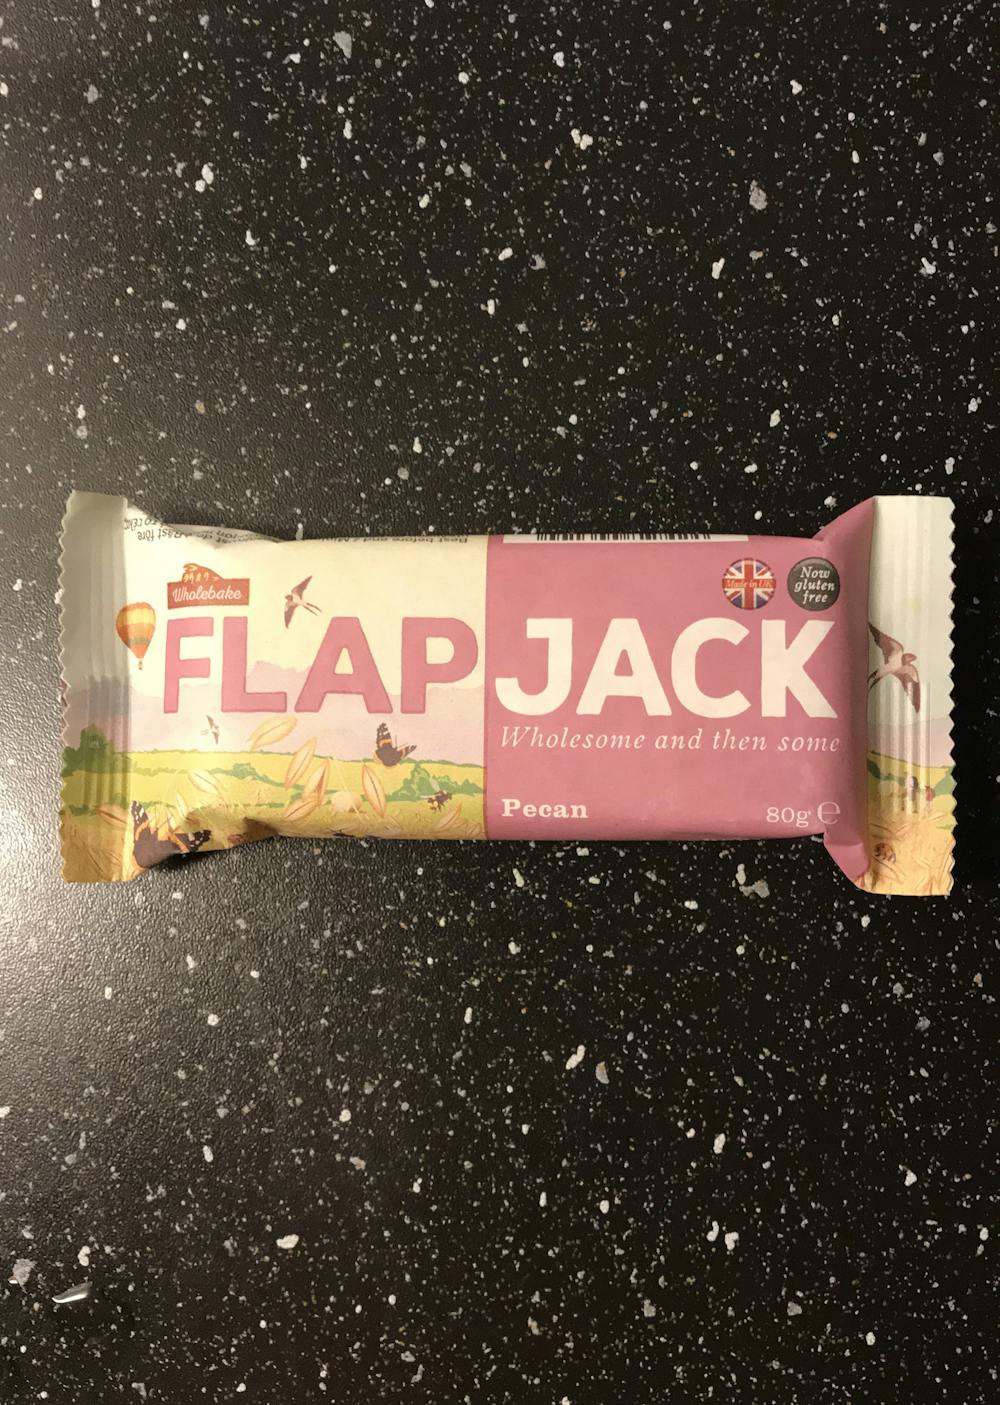 Flap jack pecan, Wholebake